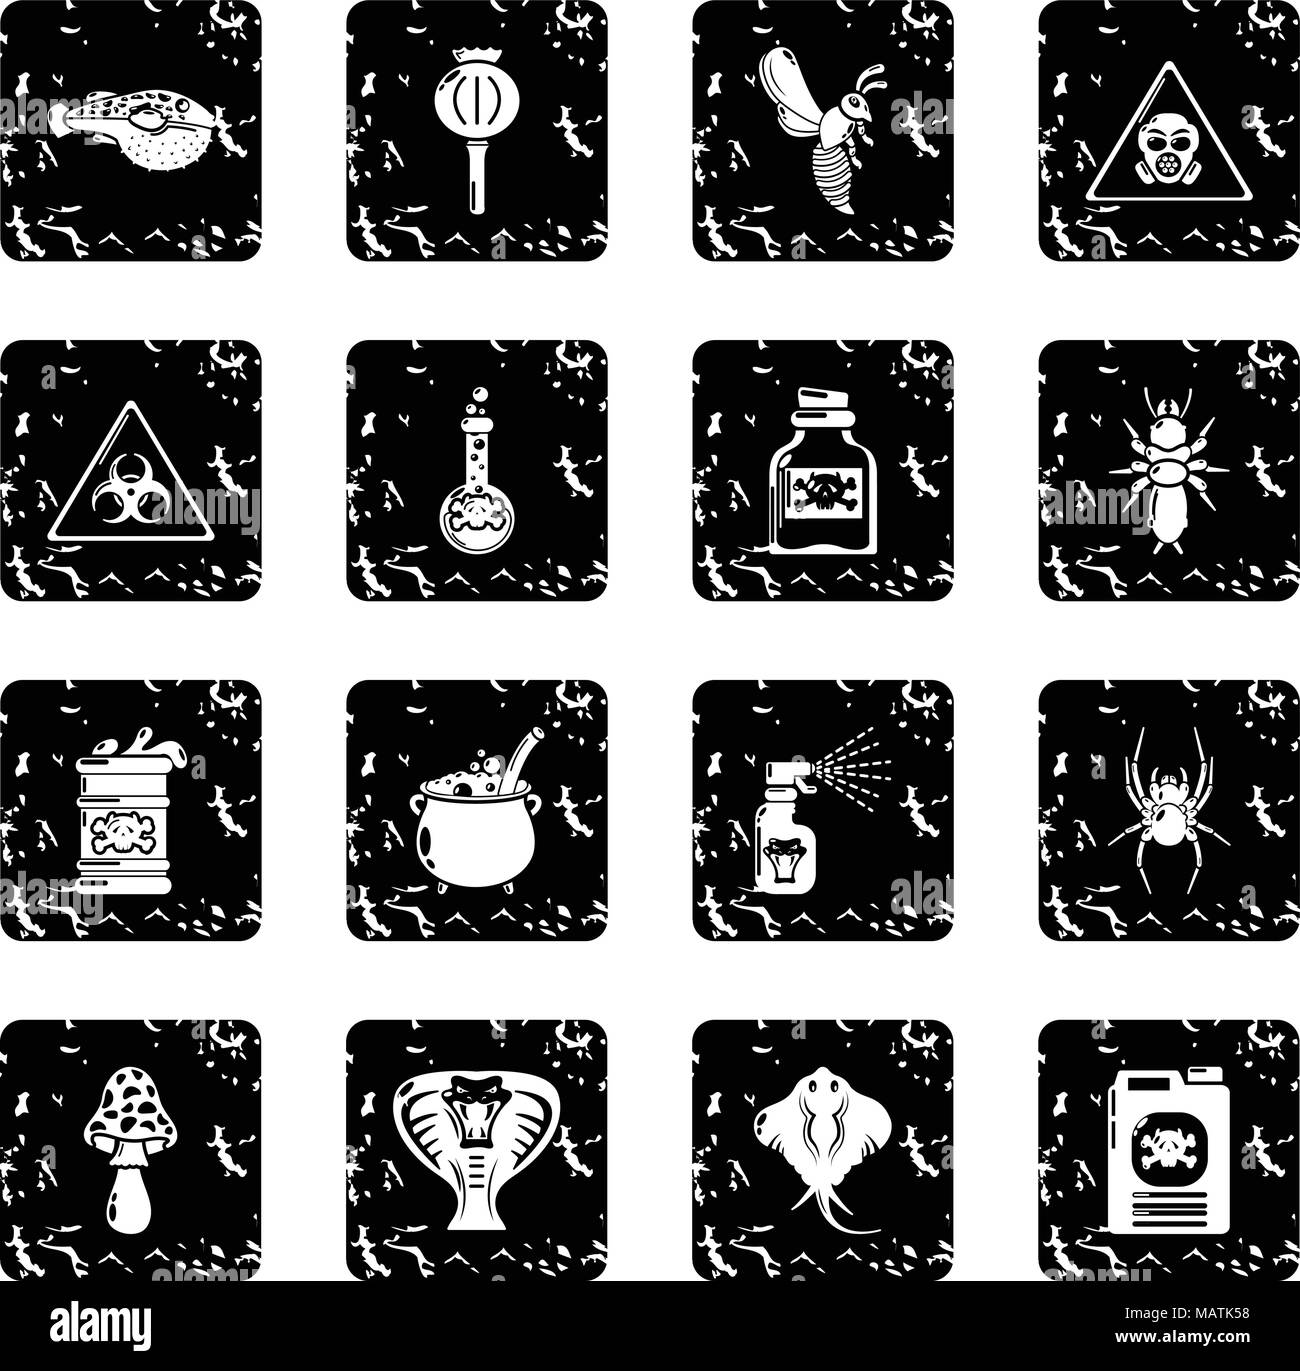 Danger Toxique Poison grunge vector icons set Illustration de Vecteur